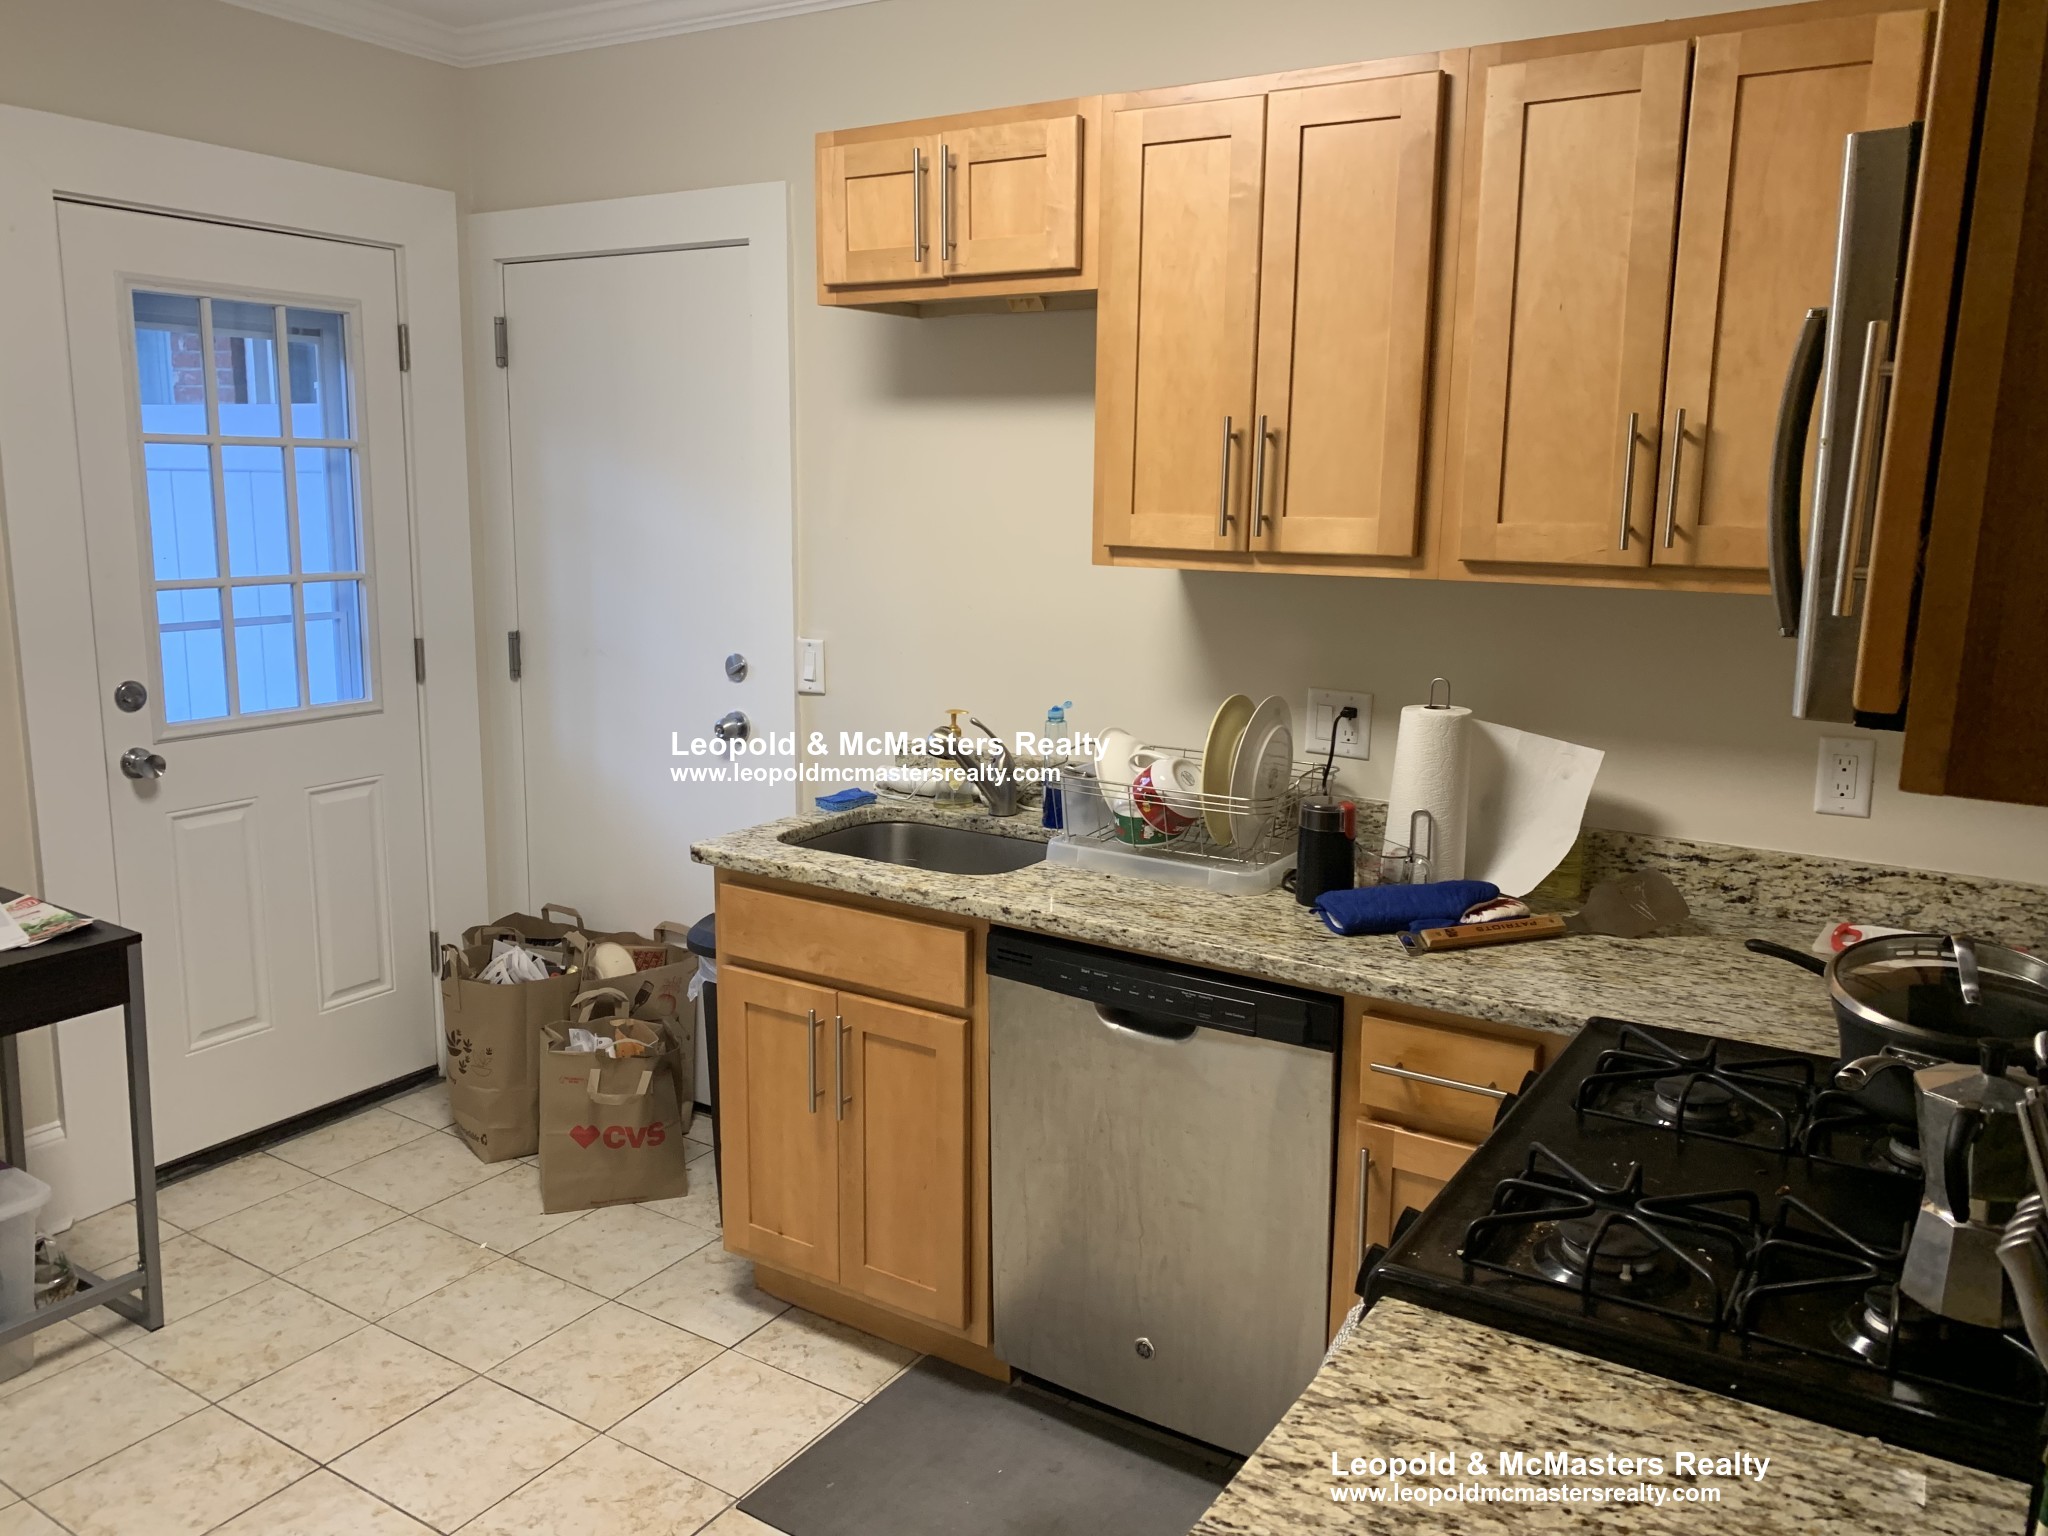 Photos of apartment on Saint Paul Rd.,Brookline MA 02446